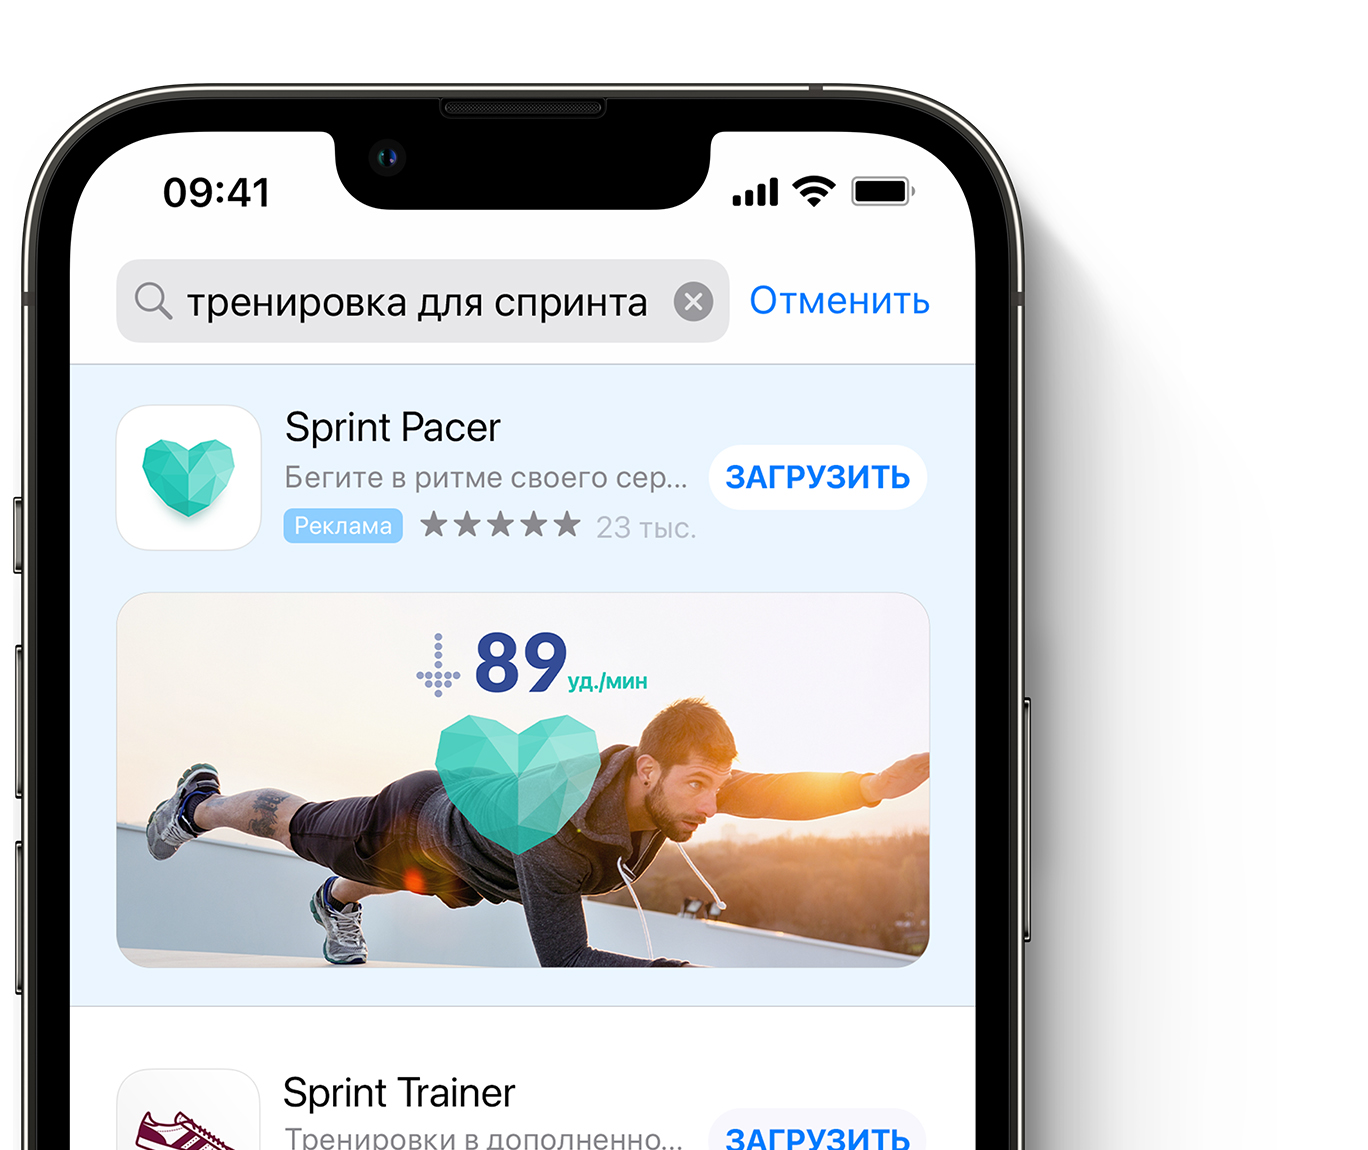 Реклама приложения Sprint Pacer в верхней части результатов поиска